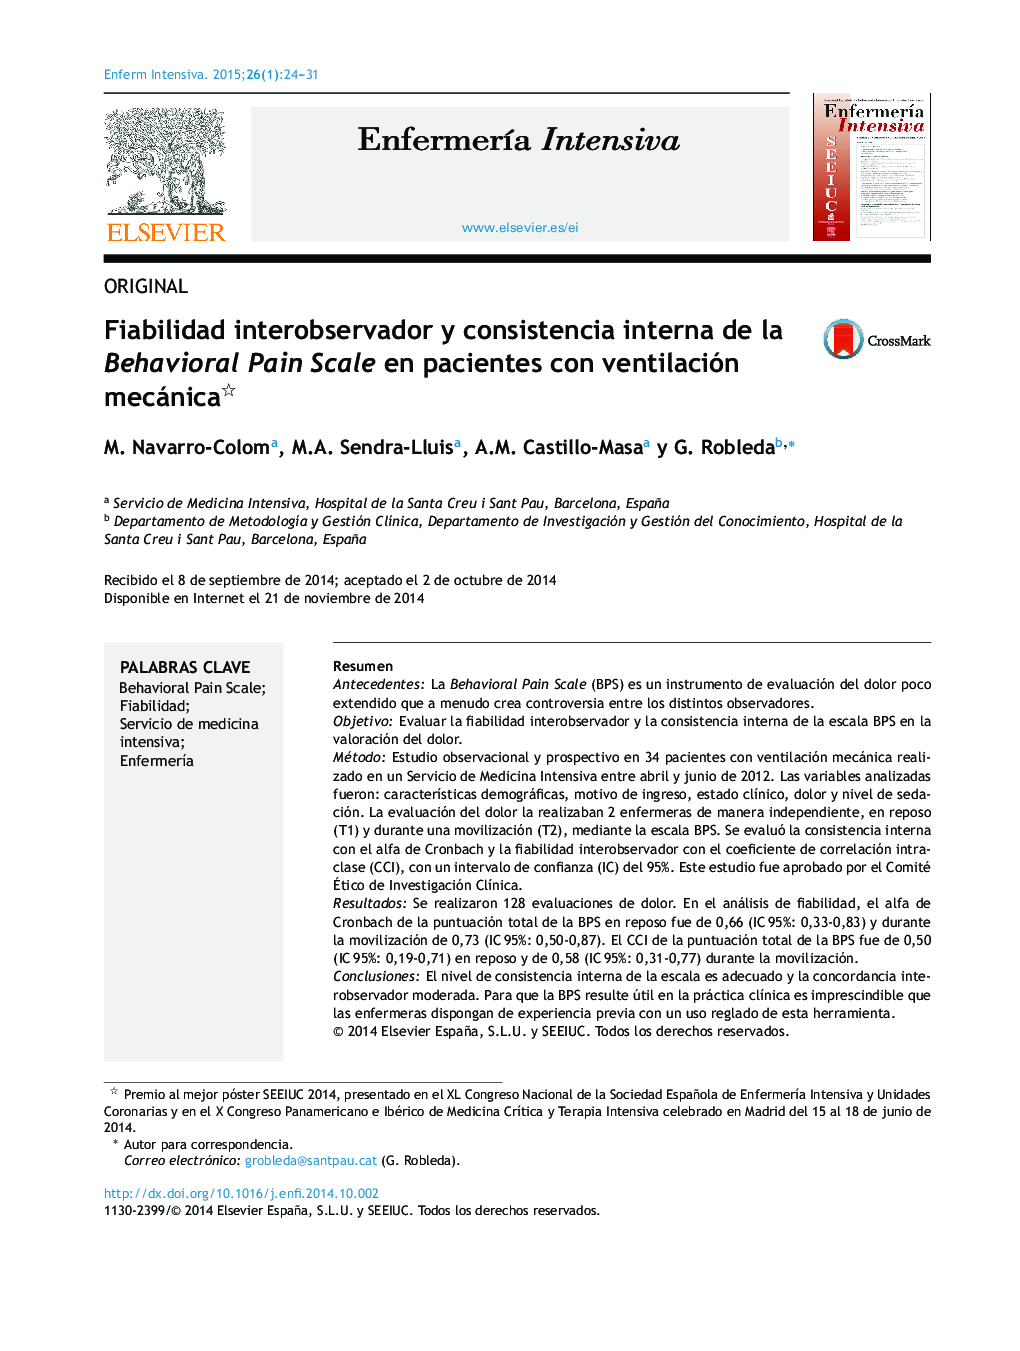 Fiabilidad interobservador y consistencia interna de la Behavioral Pain Scale en pacientes con ventilación mecánica